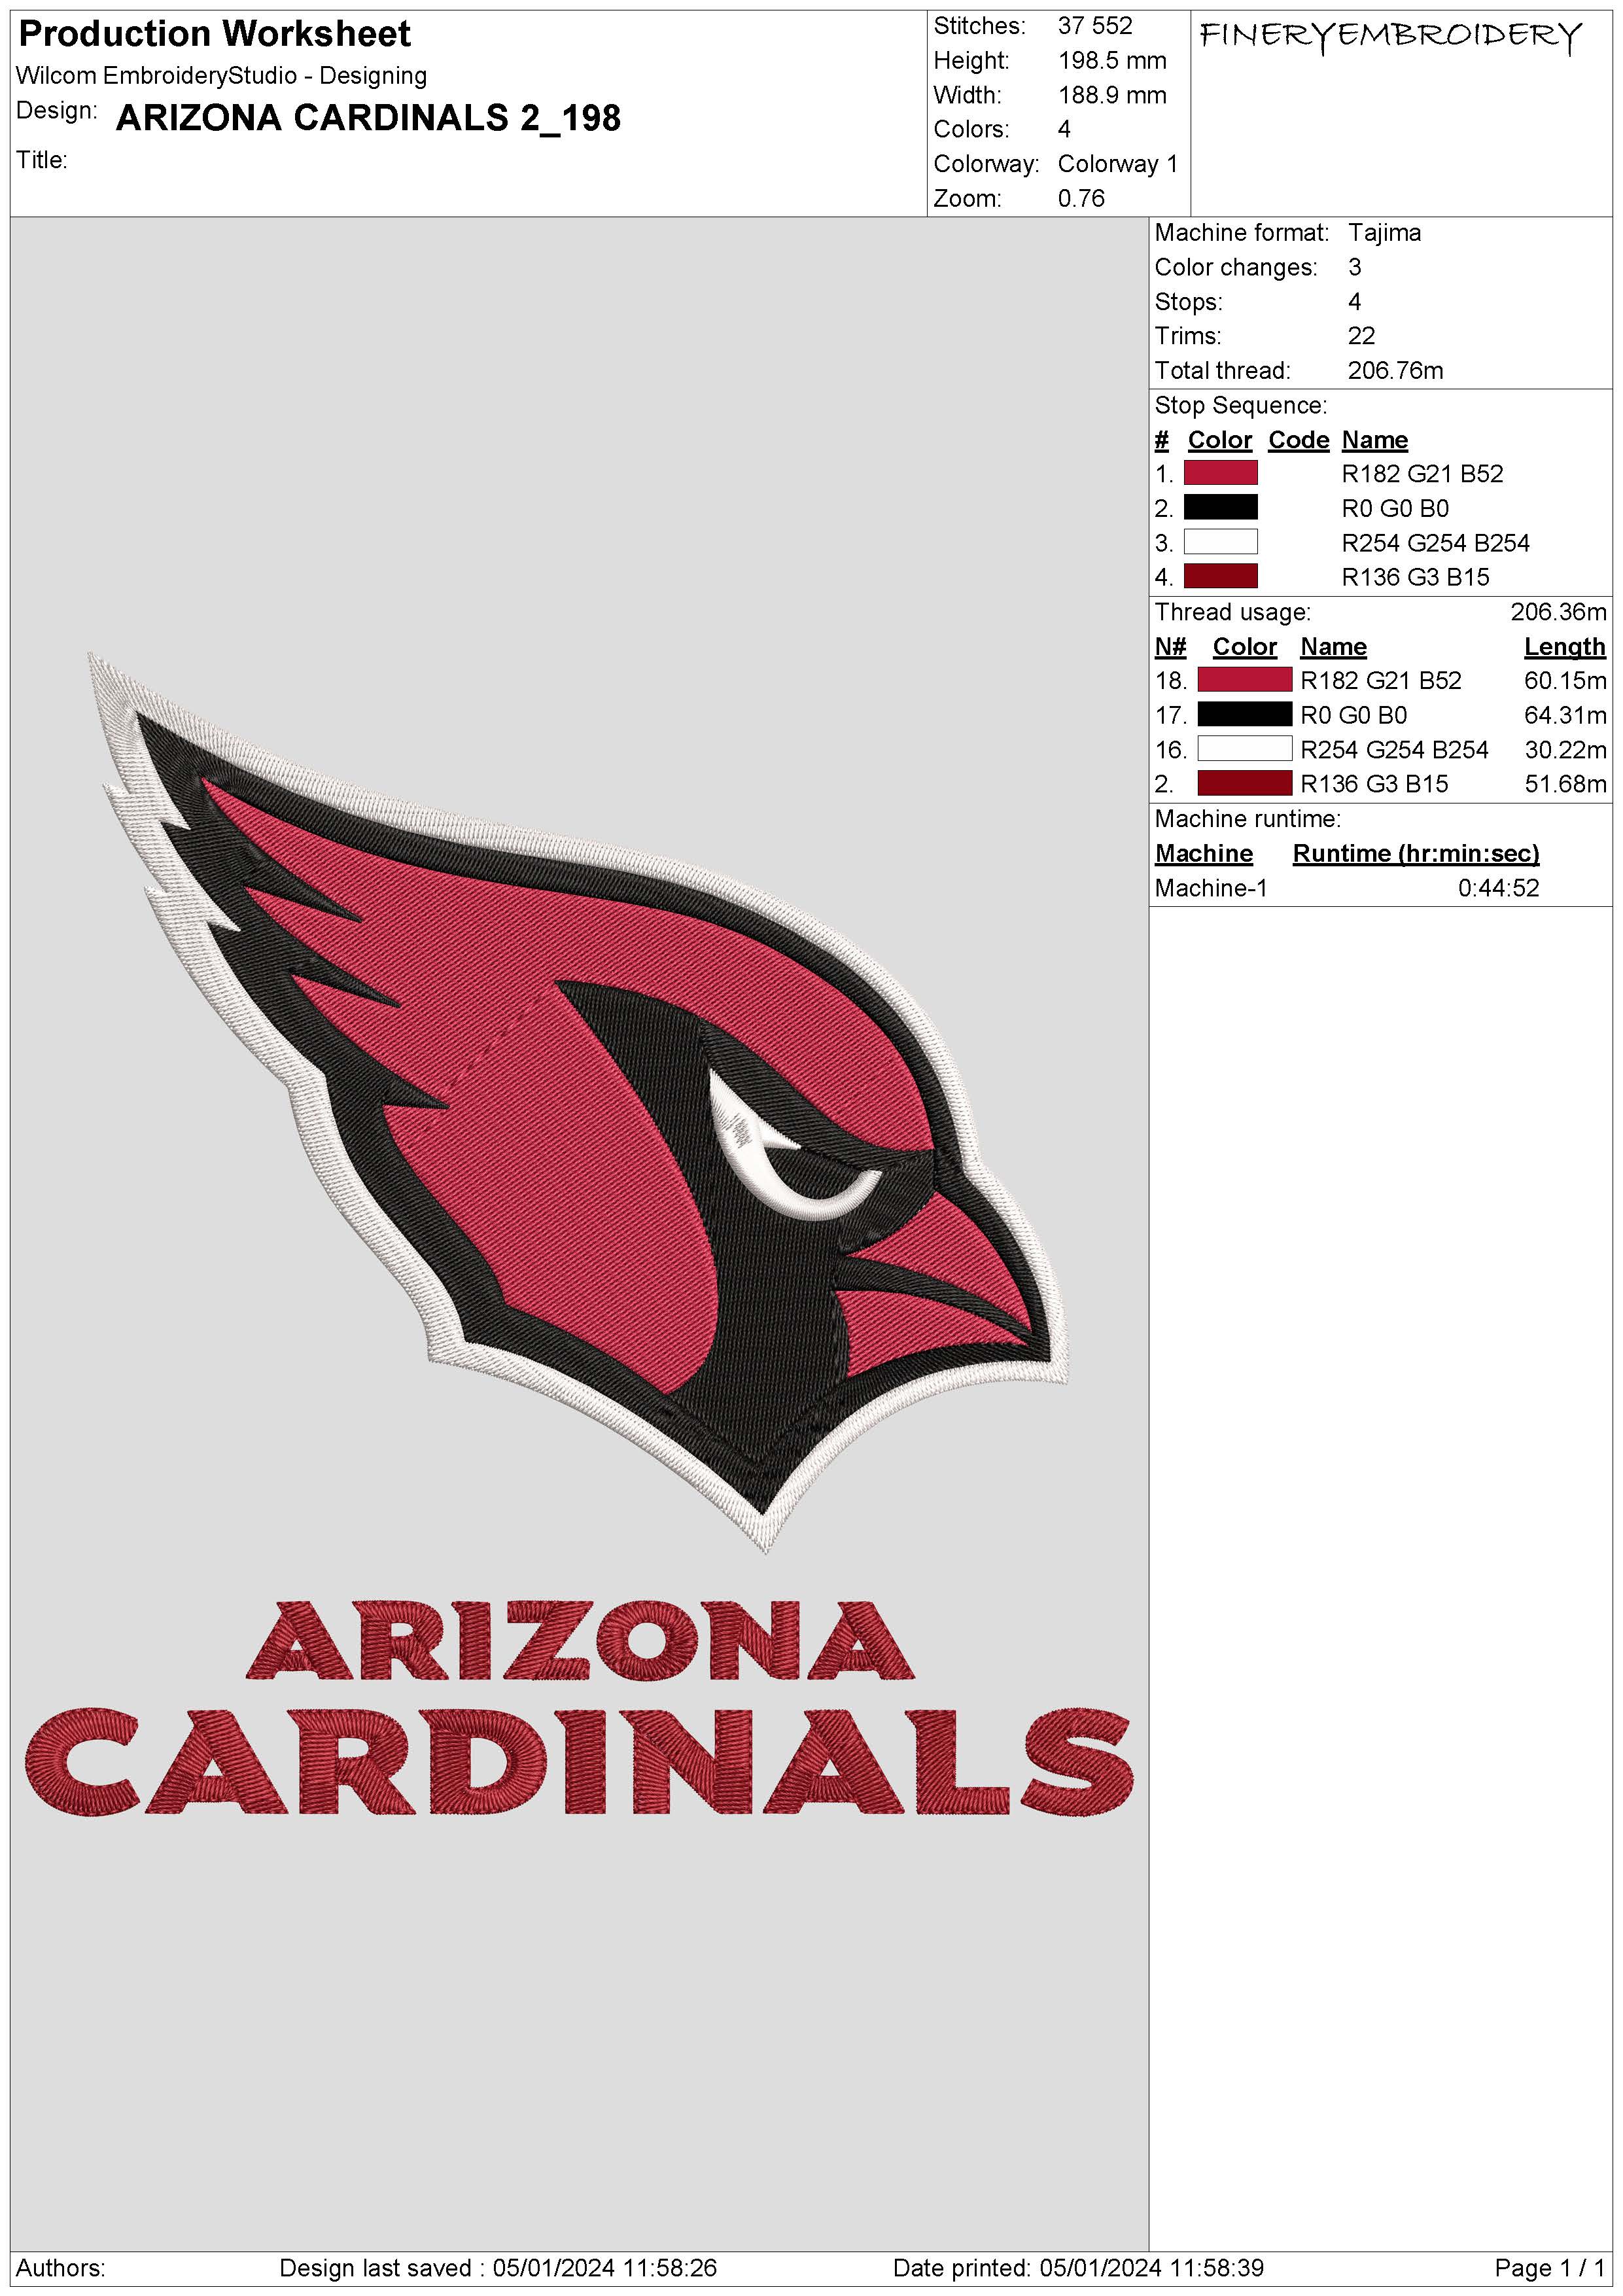 Arizona Cardinals 2 : Embroidery Design